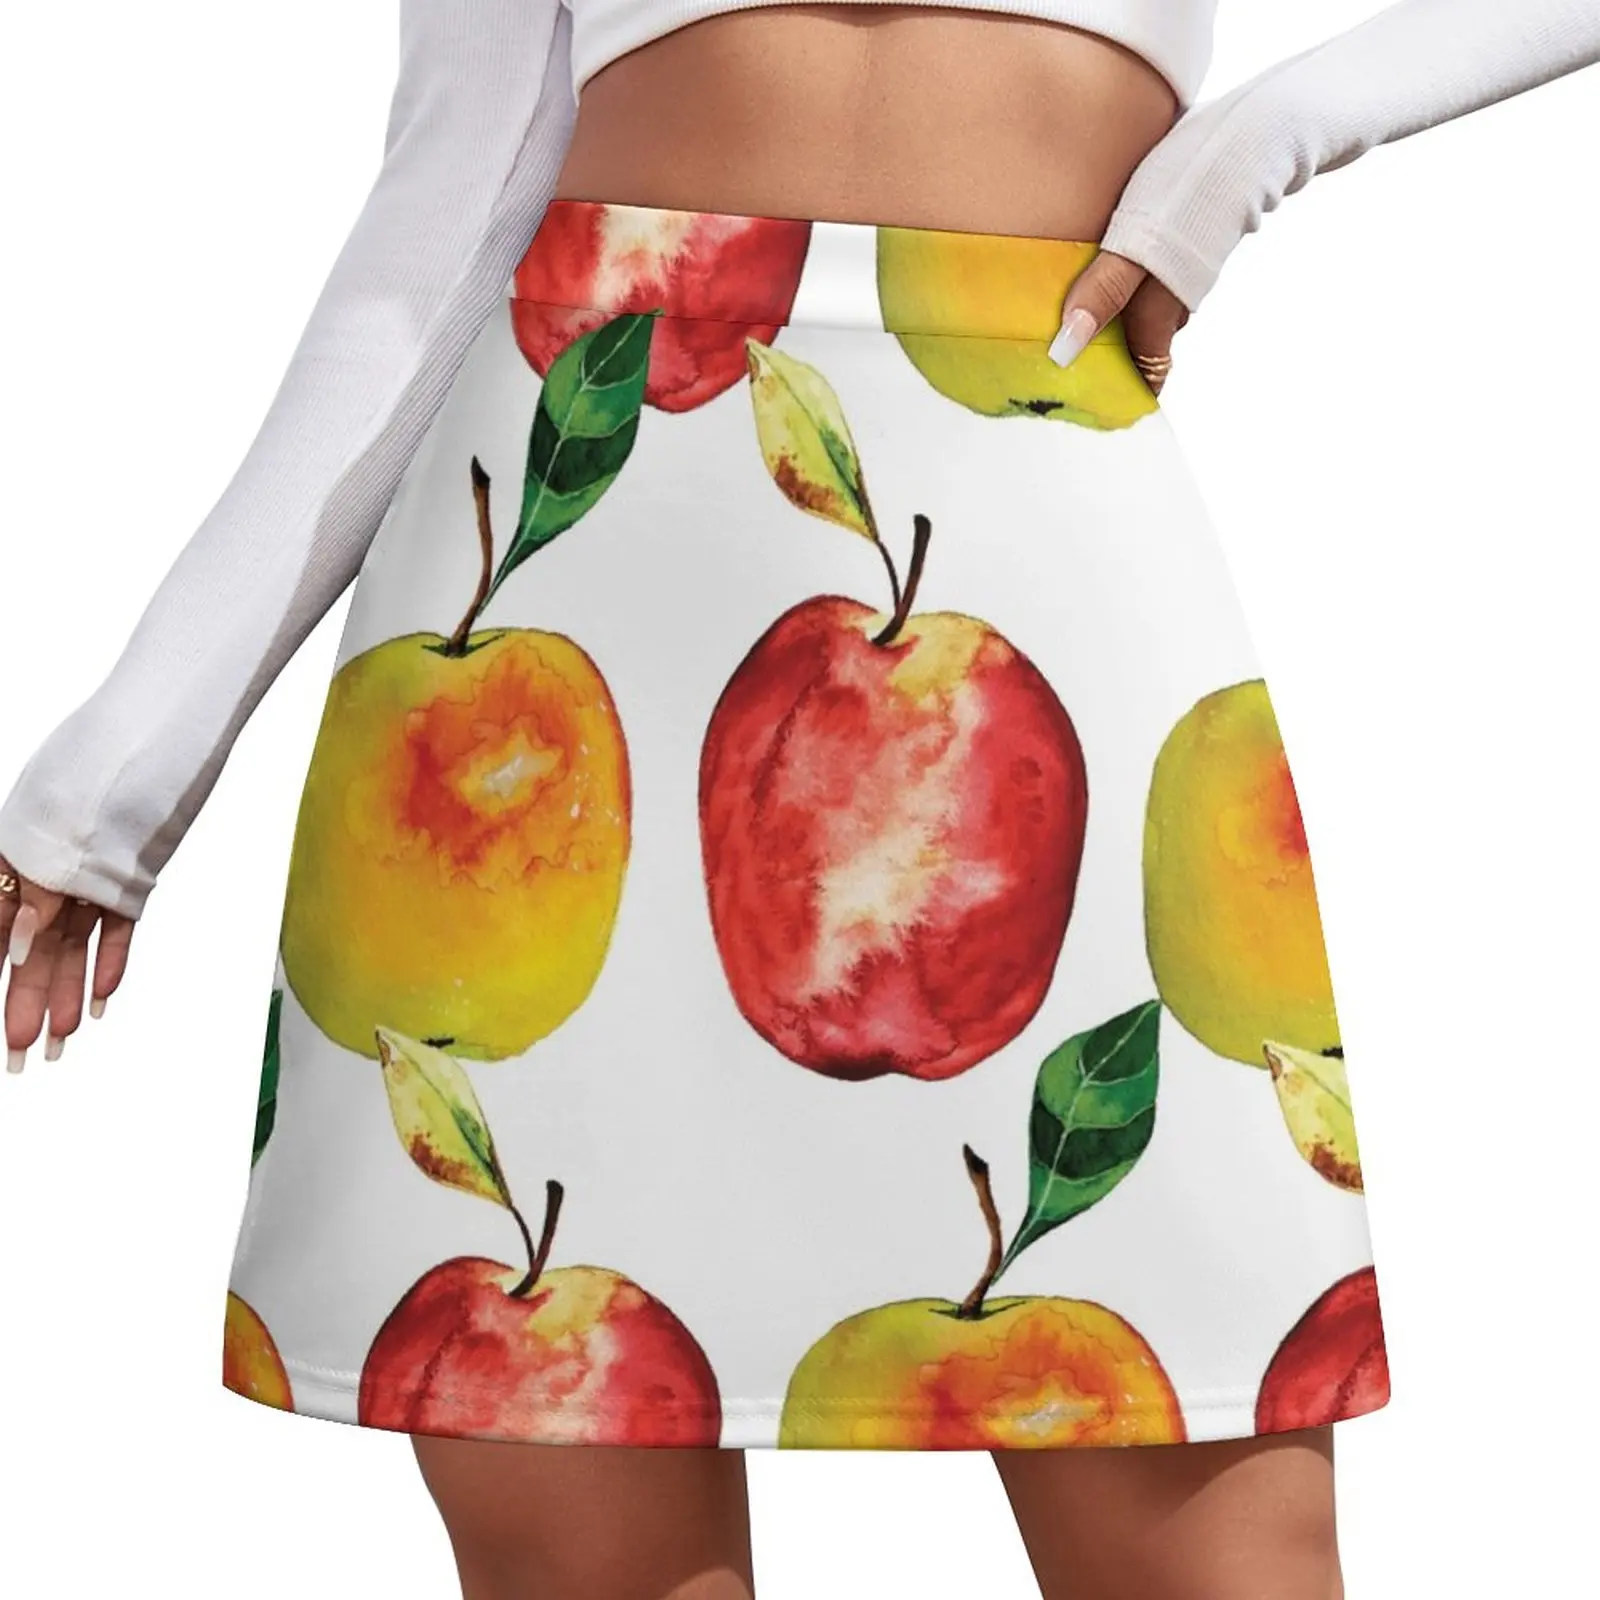 

How do you like them apples Mini Skirt midi skirt for women skirt skirt